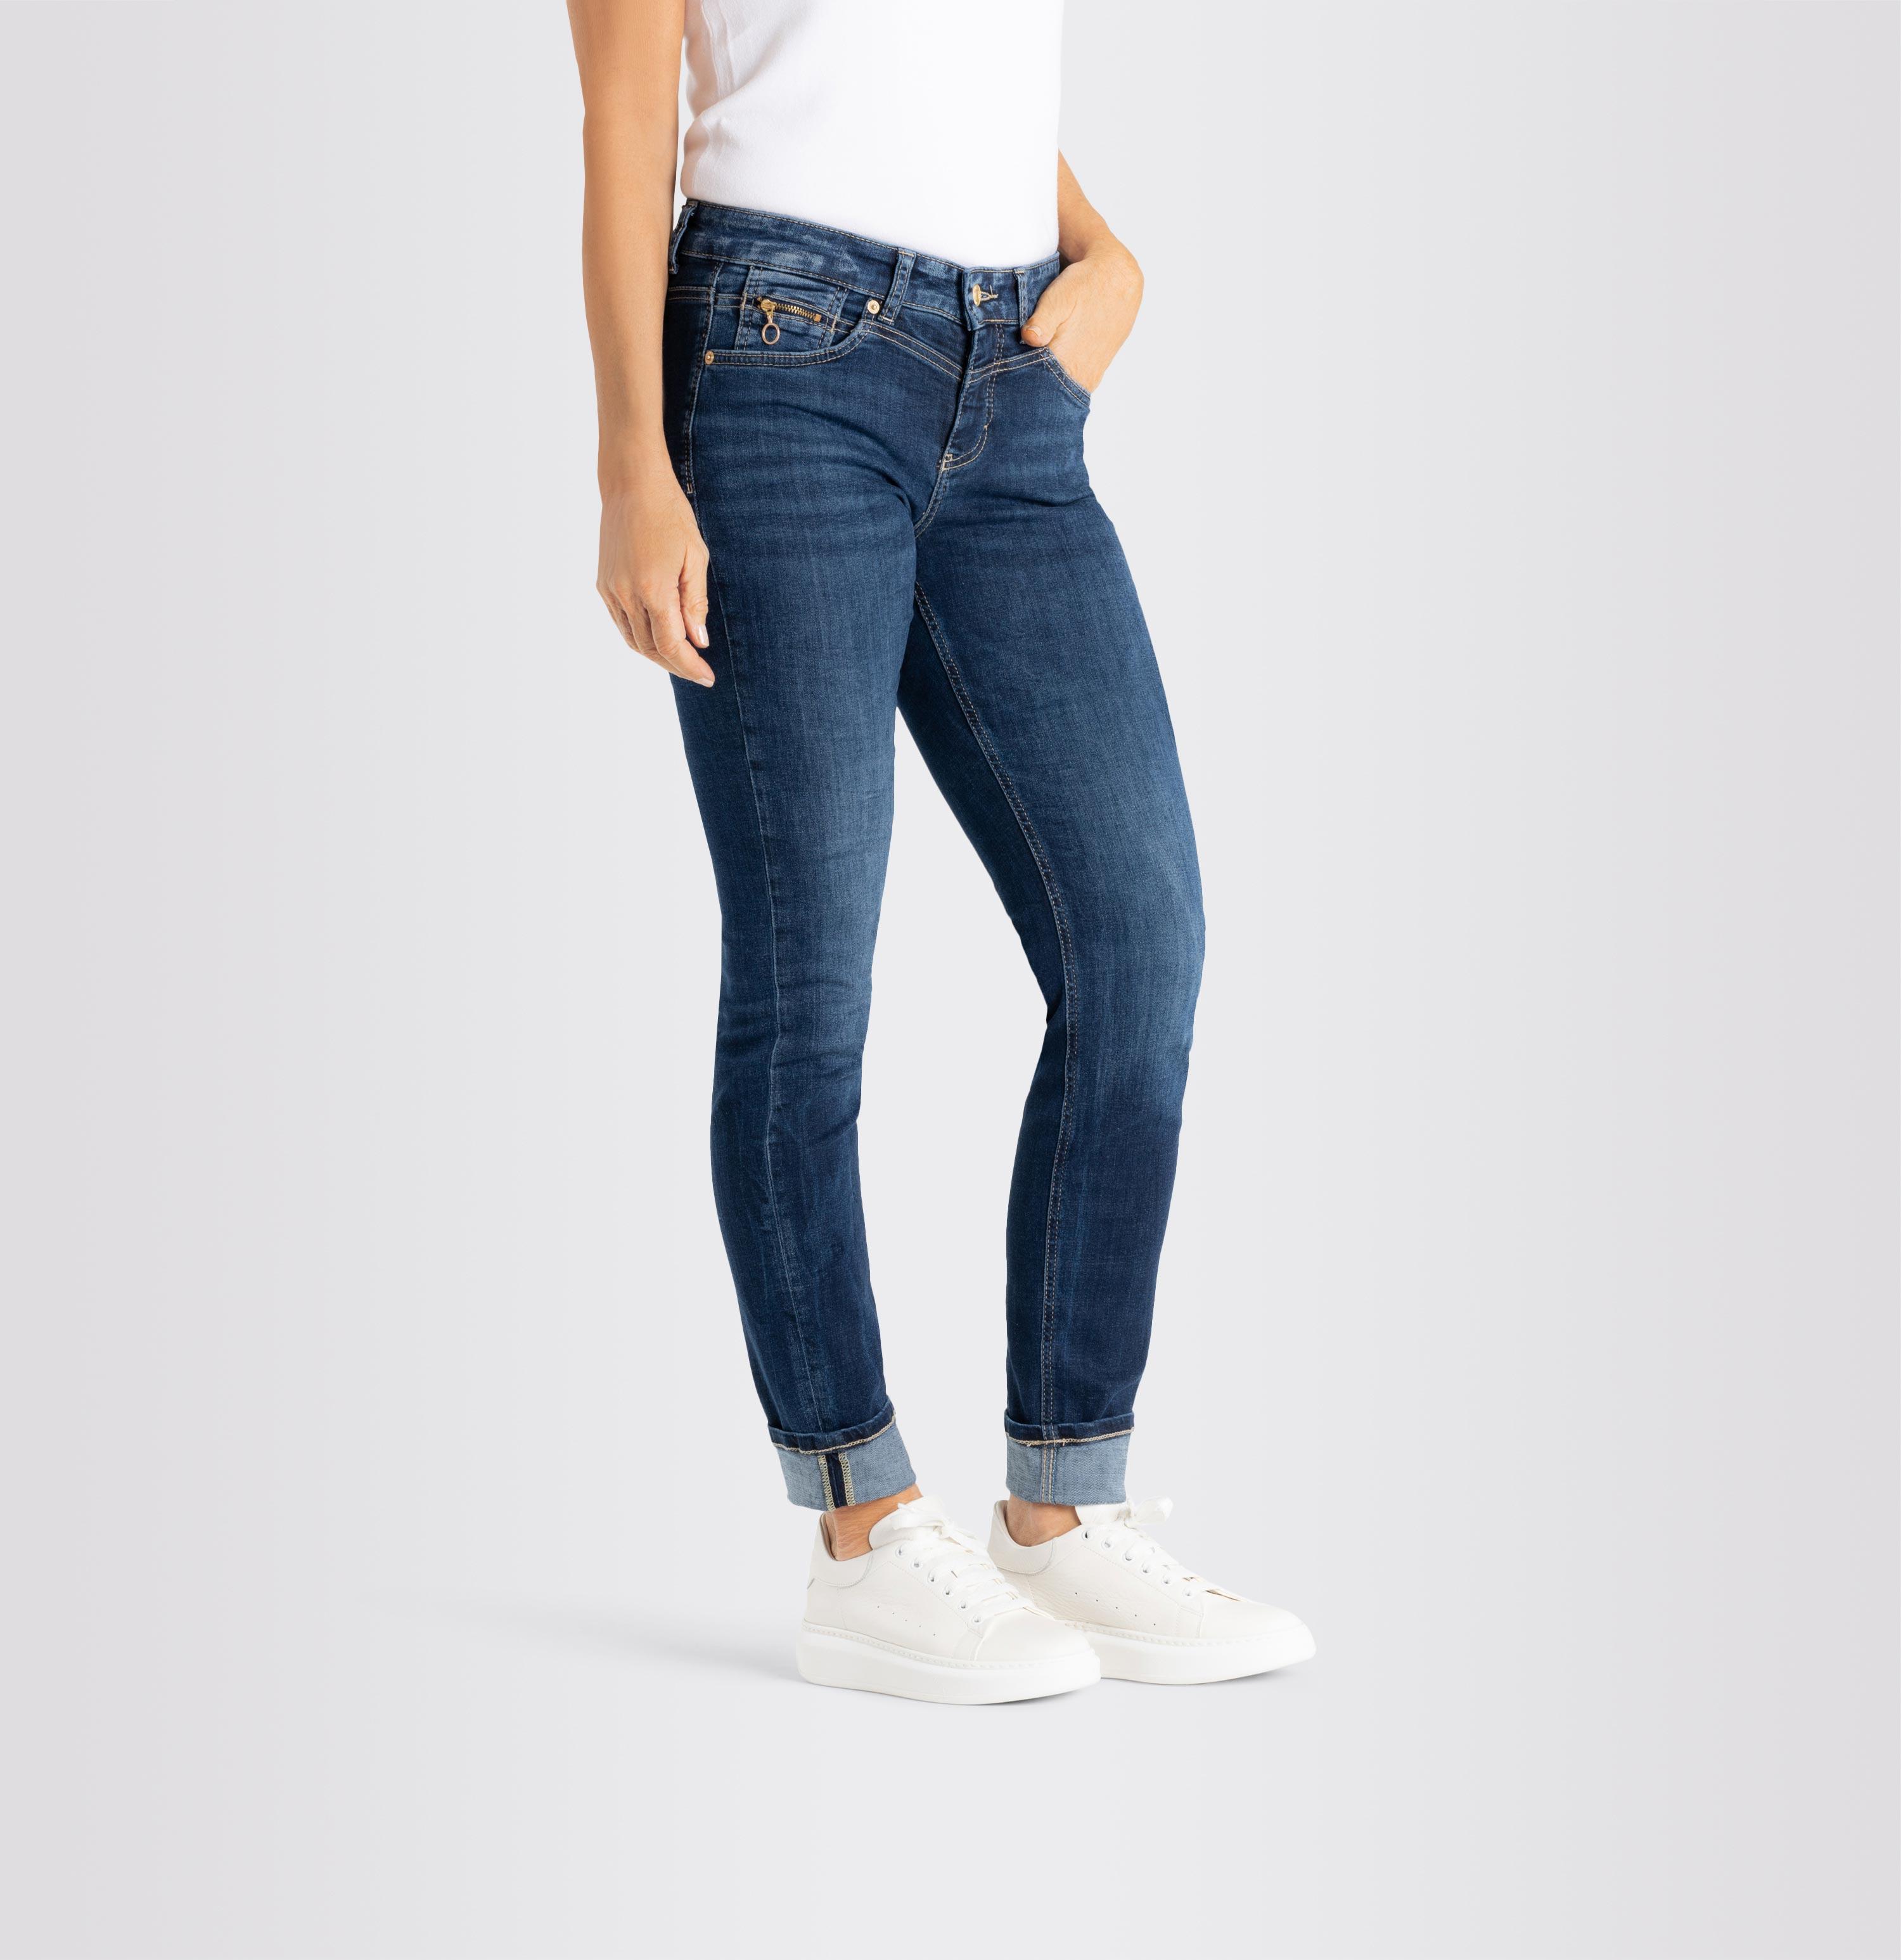 Damenhose, Rich Slim, dunkelblau Light Shop | D671 MAC Jeans Authentic